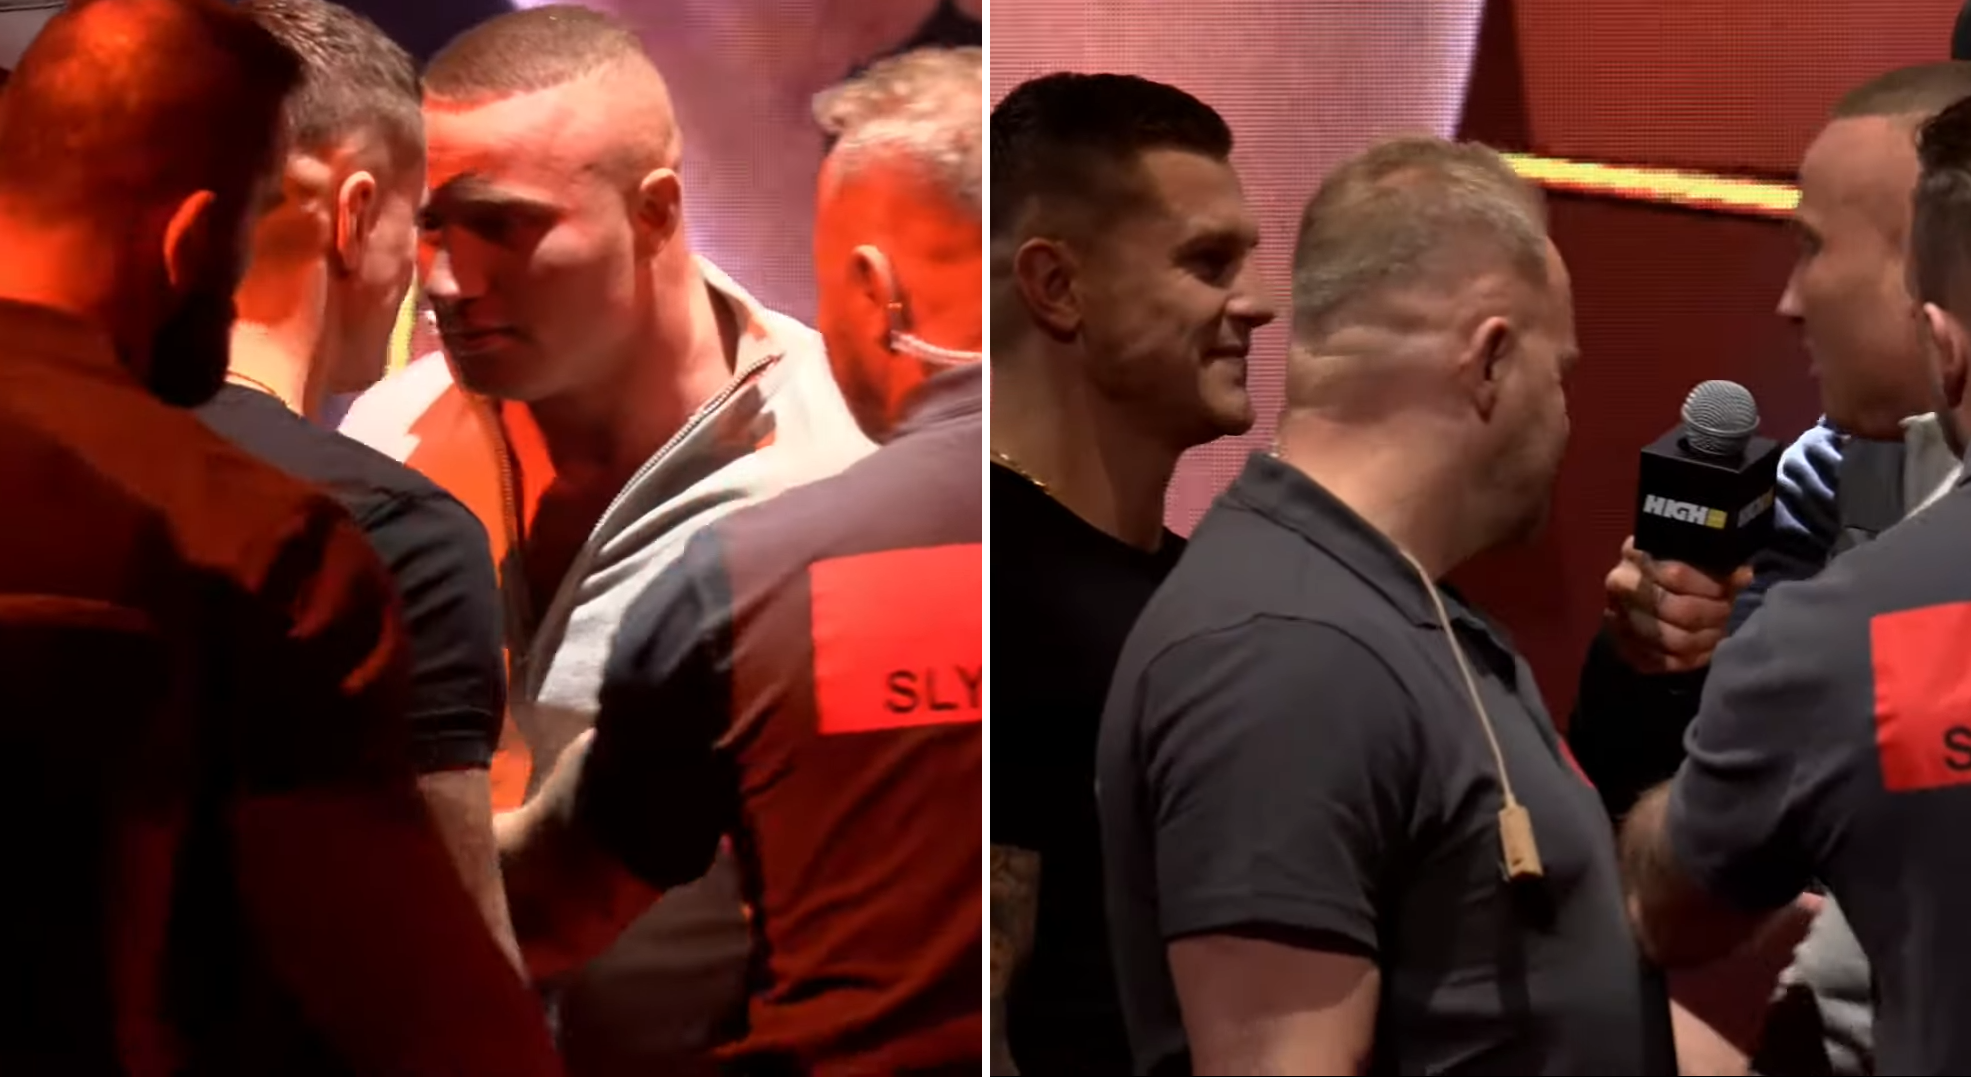 (VIDEO) Denis Załęcki twarzą w twarz z Alanem Kwiecińskim! Ogromne emocje przed walką na High League 2!